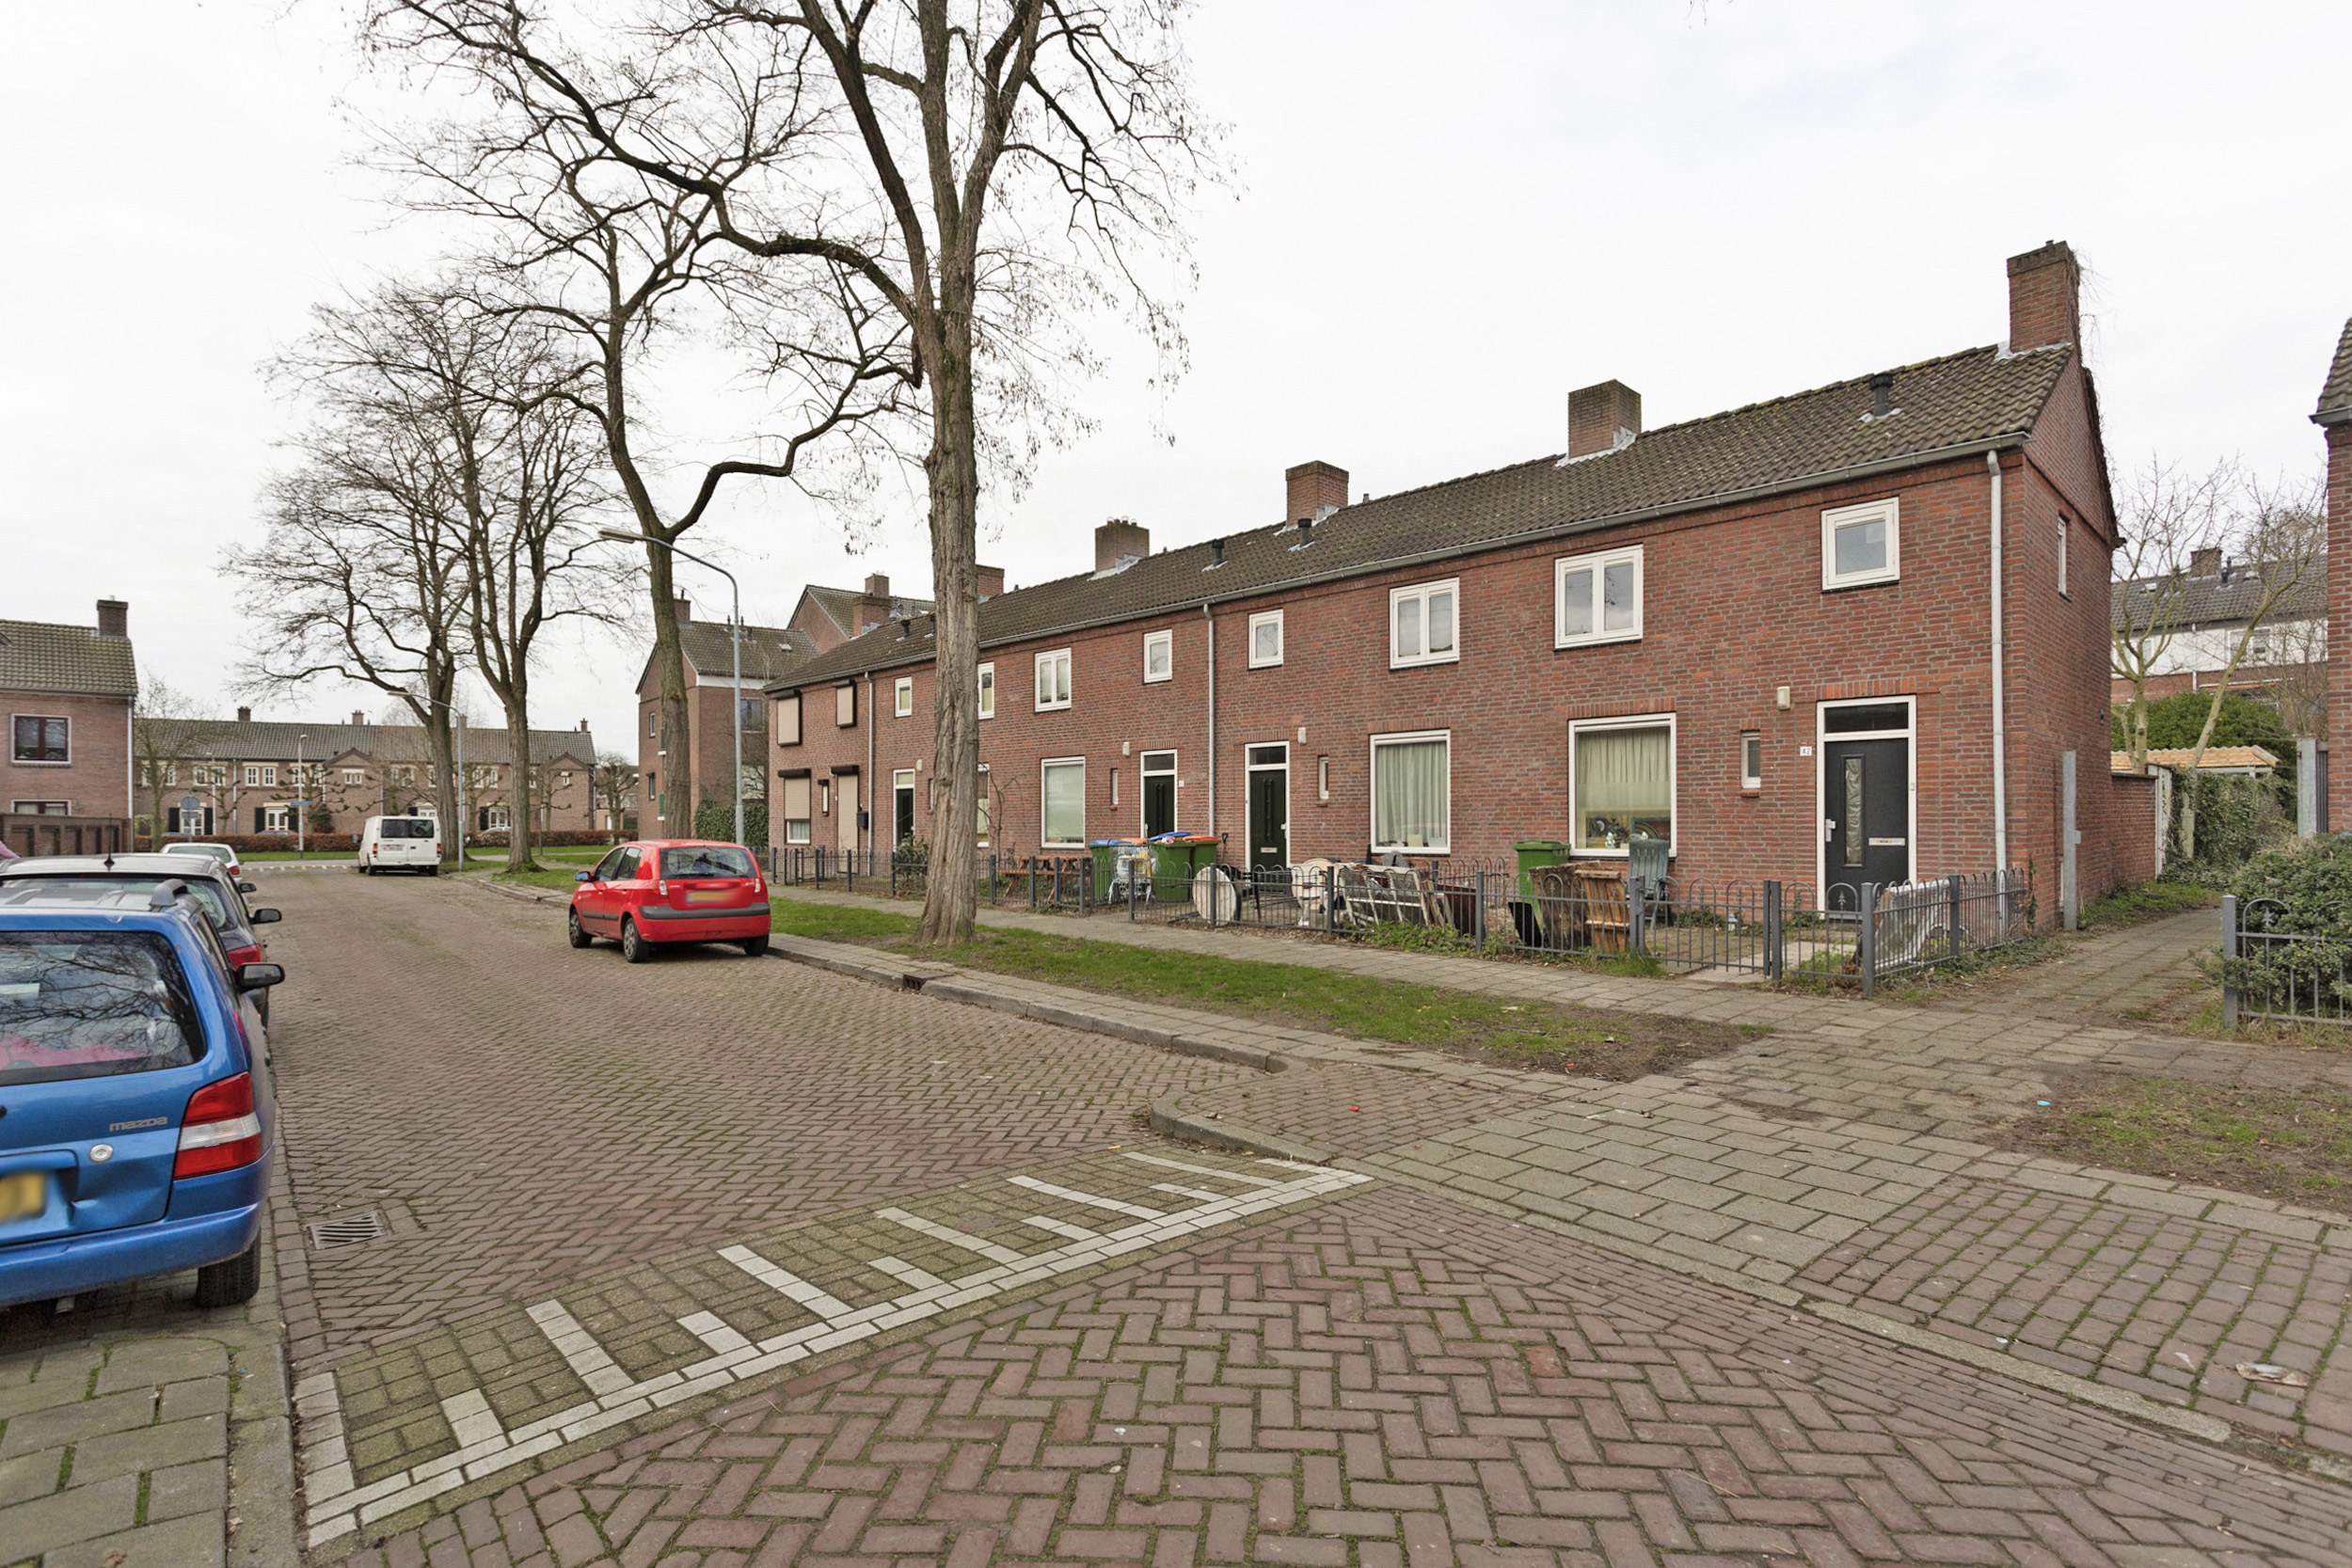 Van der Duyn van Maasdamstraat 40, 4812 NB Breda, Nederland